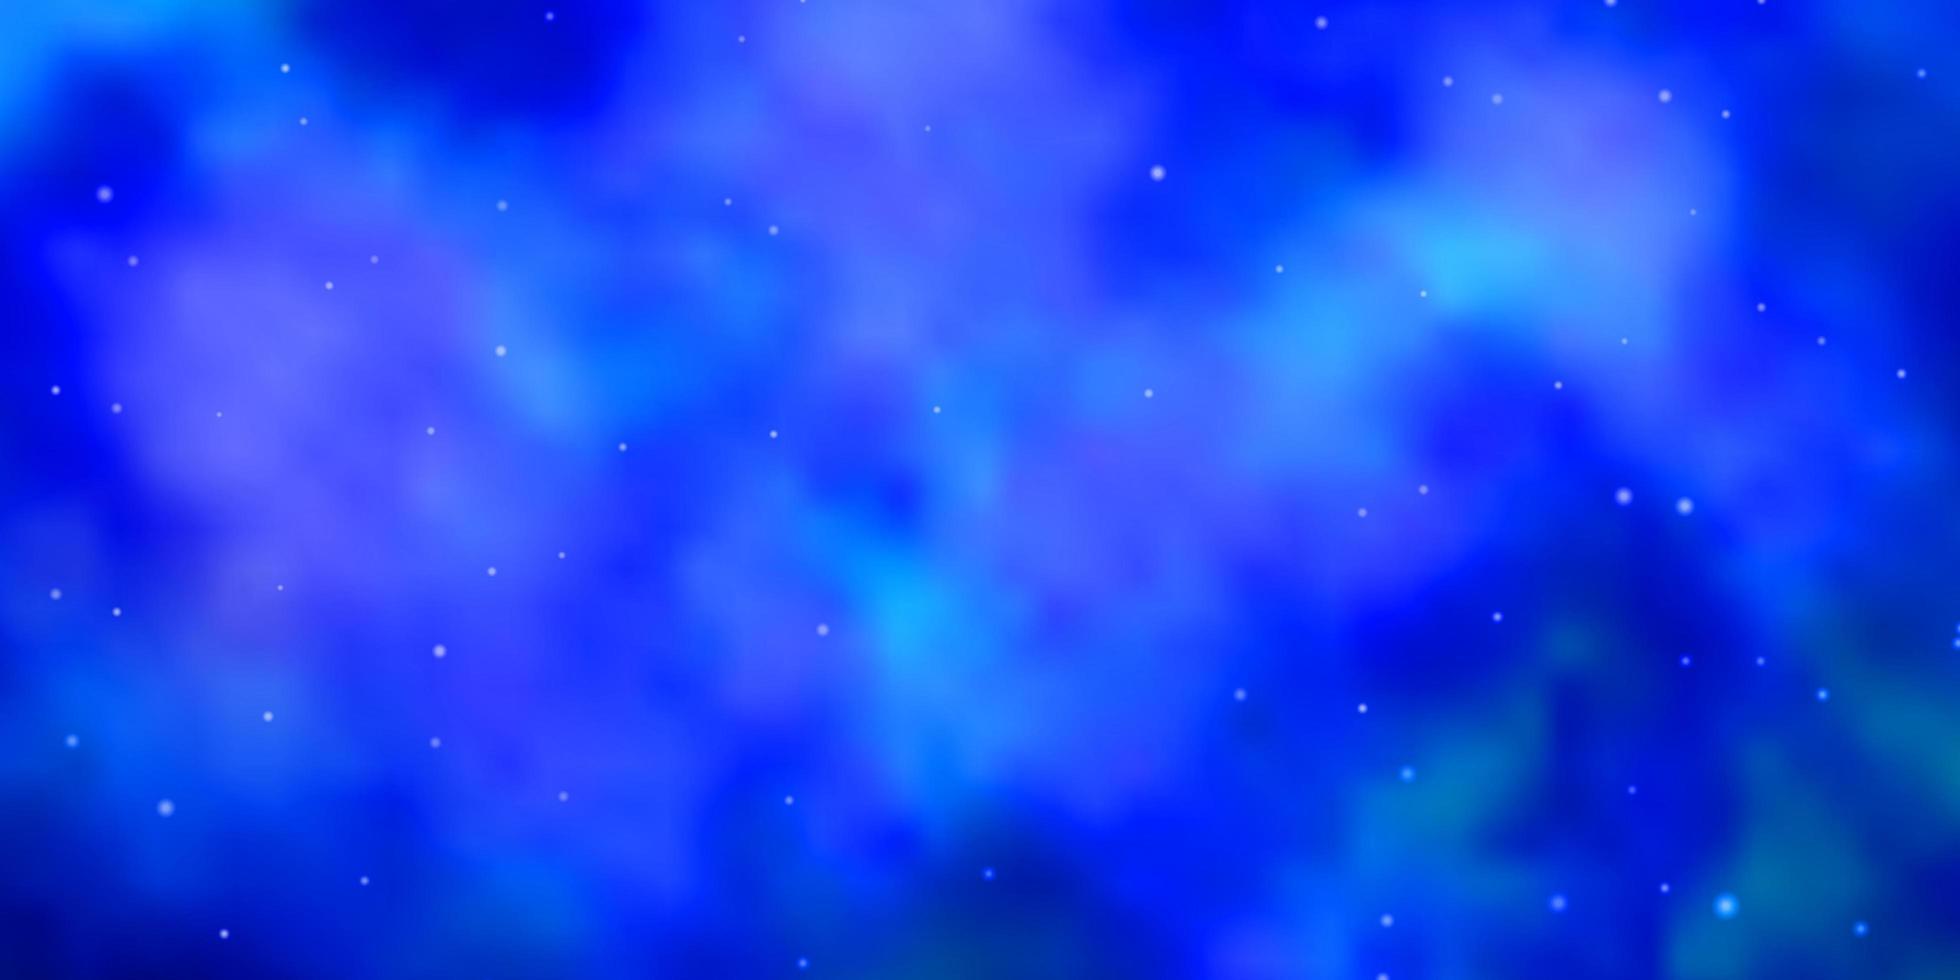 sfondo vettoriale azzurro con stelle piccole e grandi.